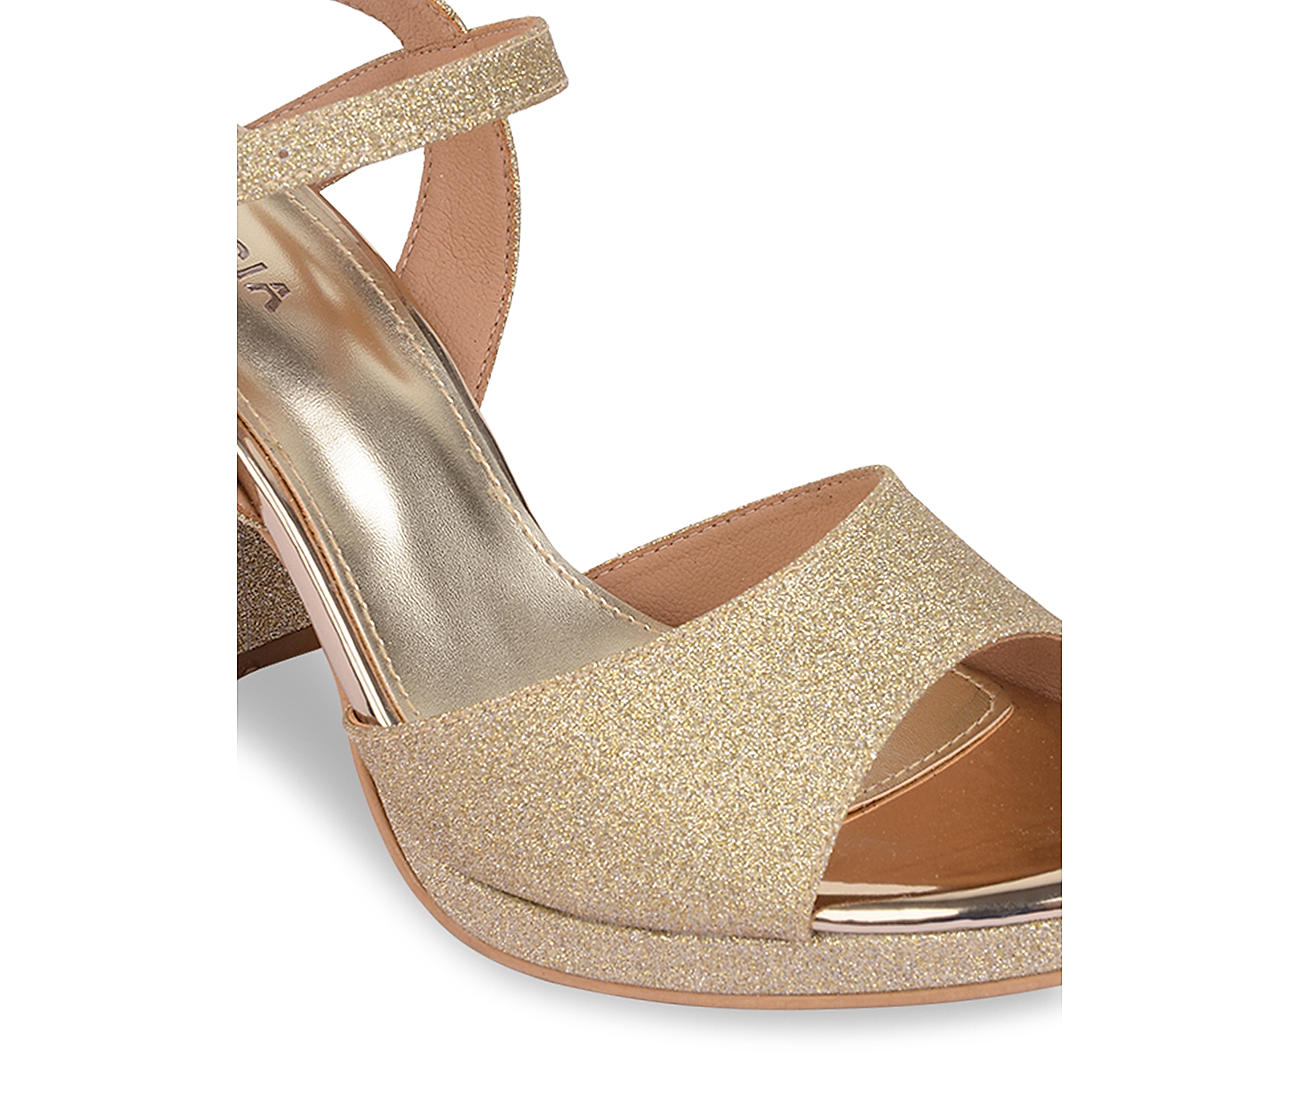 Gold Lace Up Heel | Trendy heels, Heels, Shoes heels prom